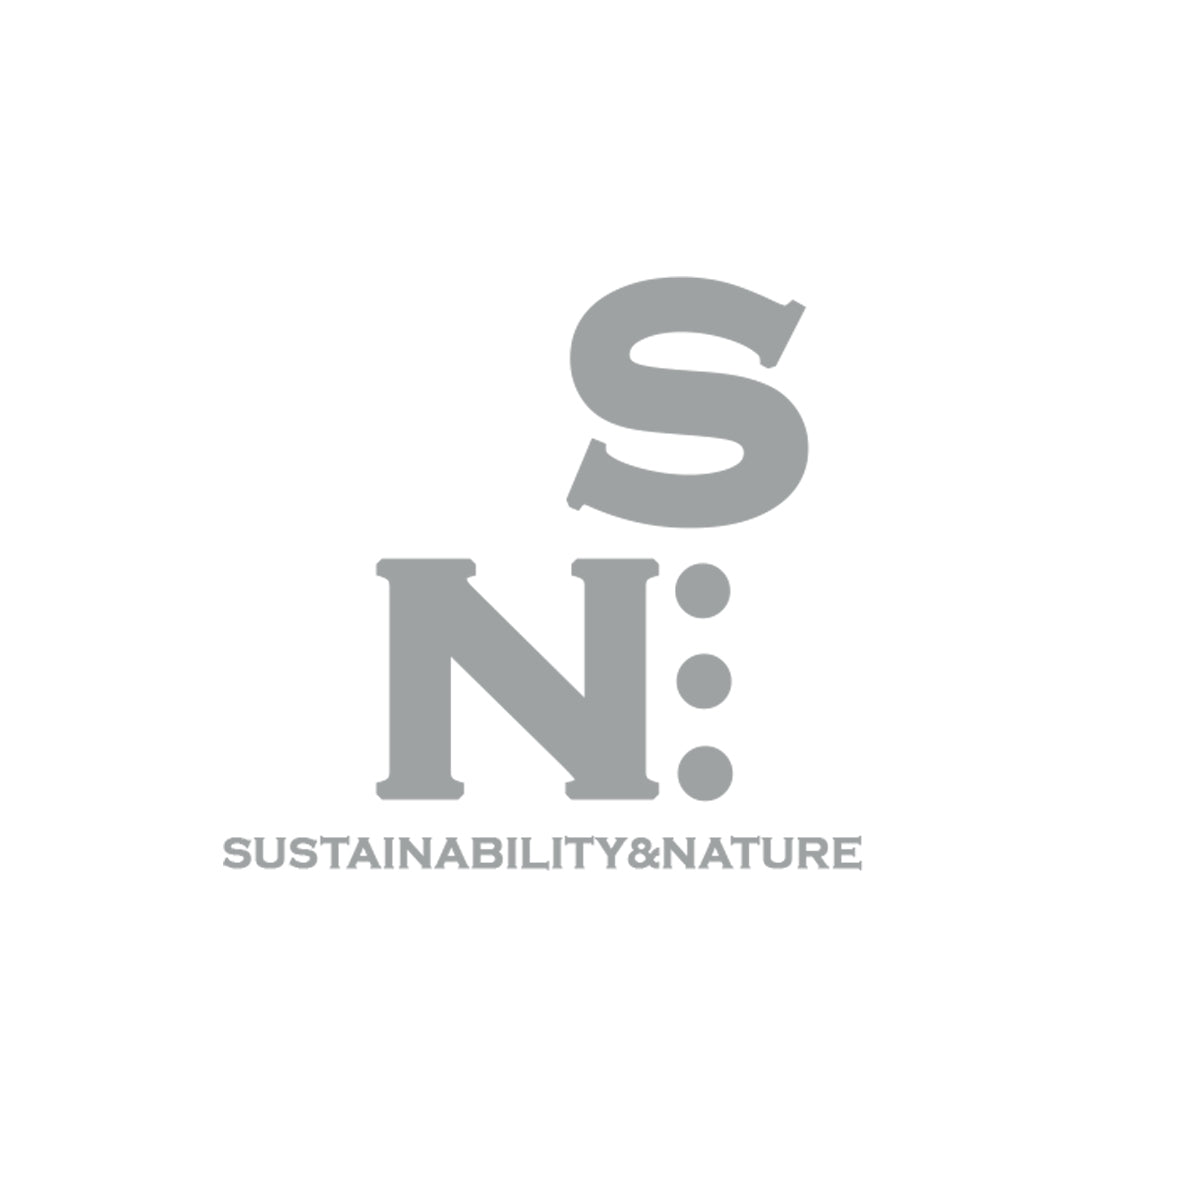 Sustainability&Nature